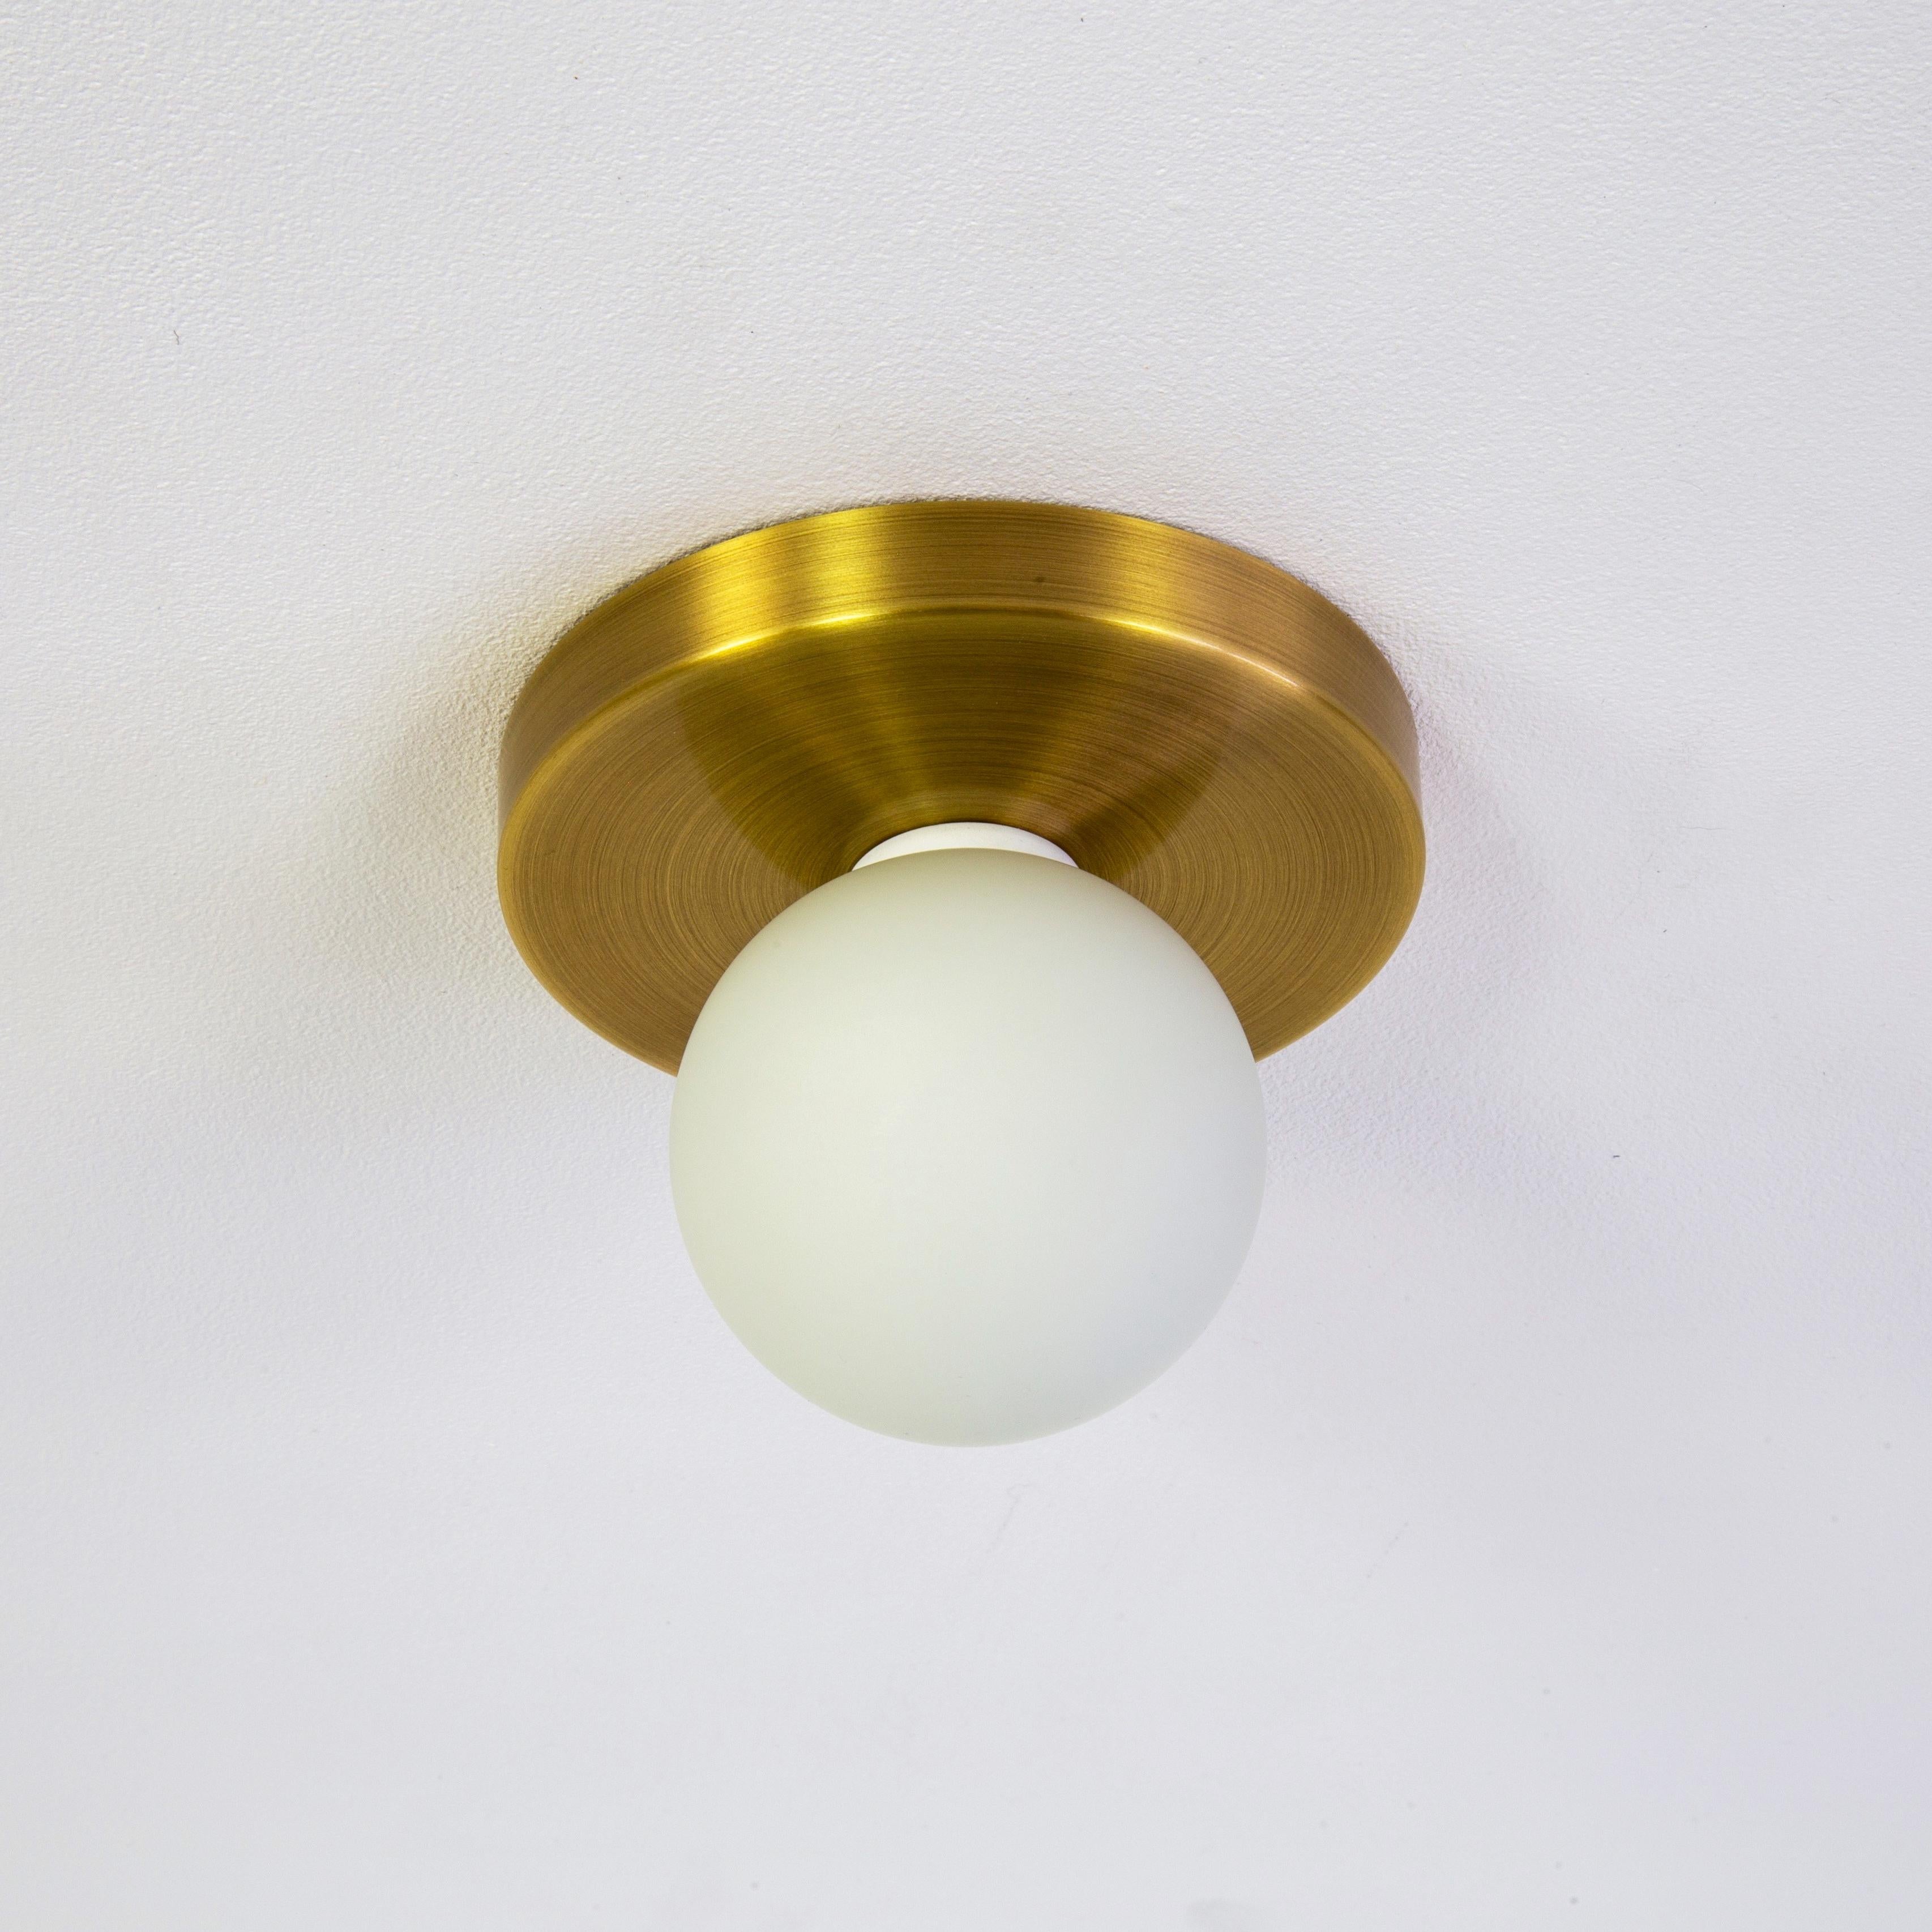 Dieses Angebot ist für 2x Globe Flush Mounts in gebürstetem Messing entworfen und hergestellt von Research.Lighting.

MATERIALIEN: Messing, Stahl & Glas
Ausführung: Gebürstetes Messing
Elektronik: 1x G9-Fassung, 1x 4,5-Watt-LED-Birne (im